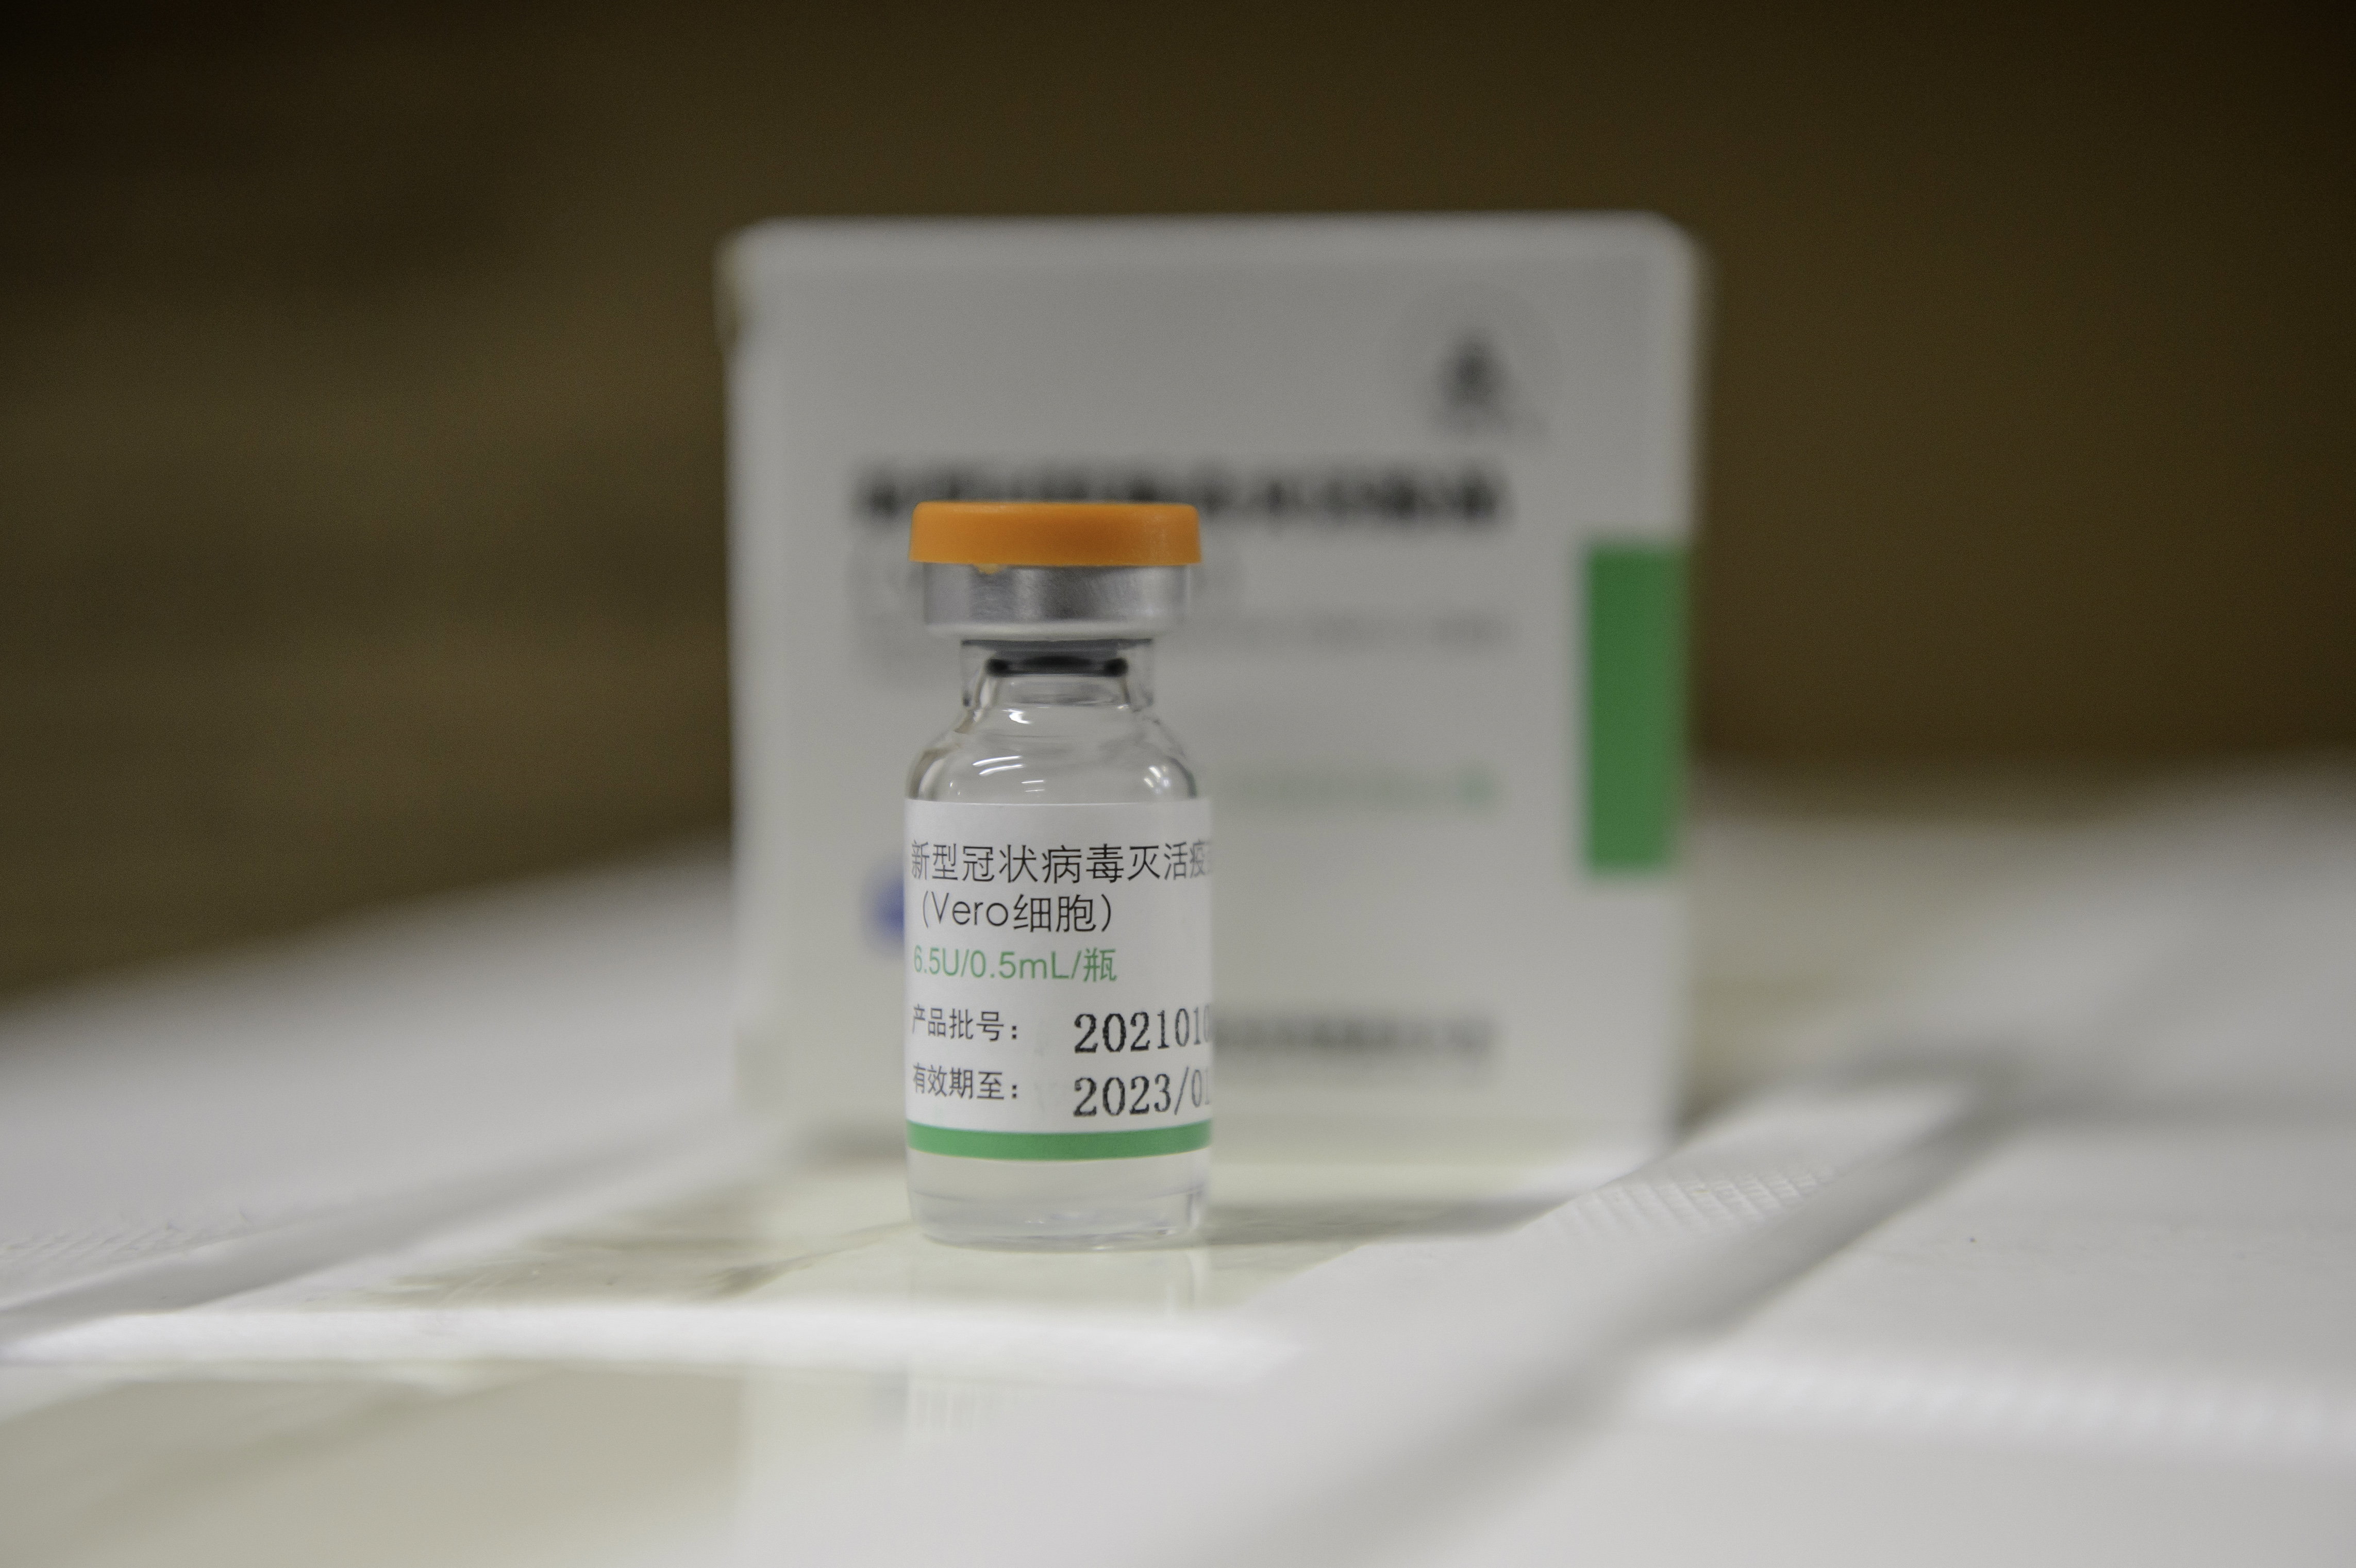 A legdrágábban vásárolt kínai vakcinából adományozott el a legtöbbet ingyen a kormány